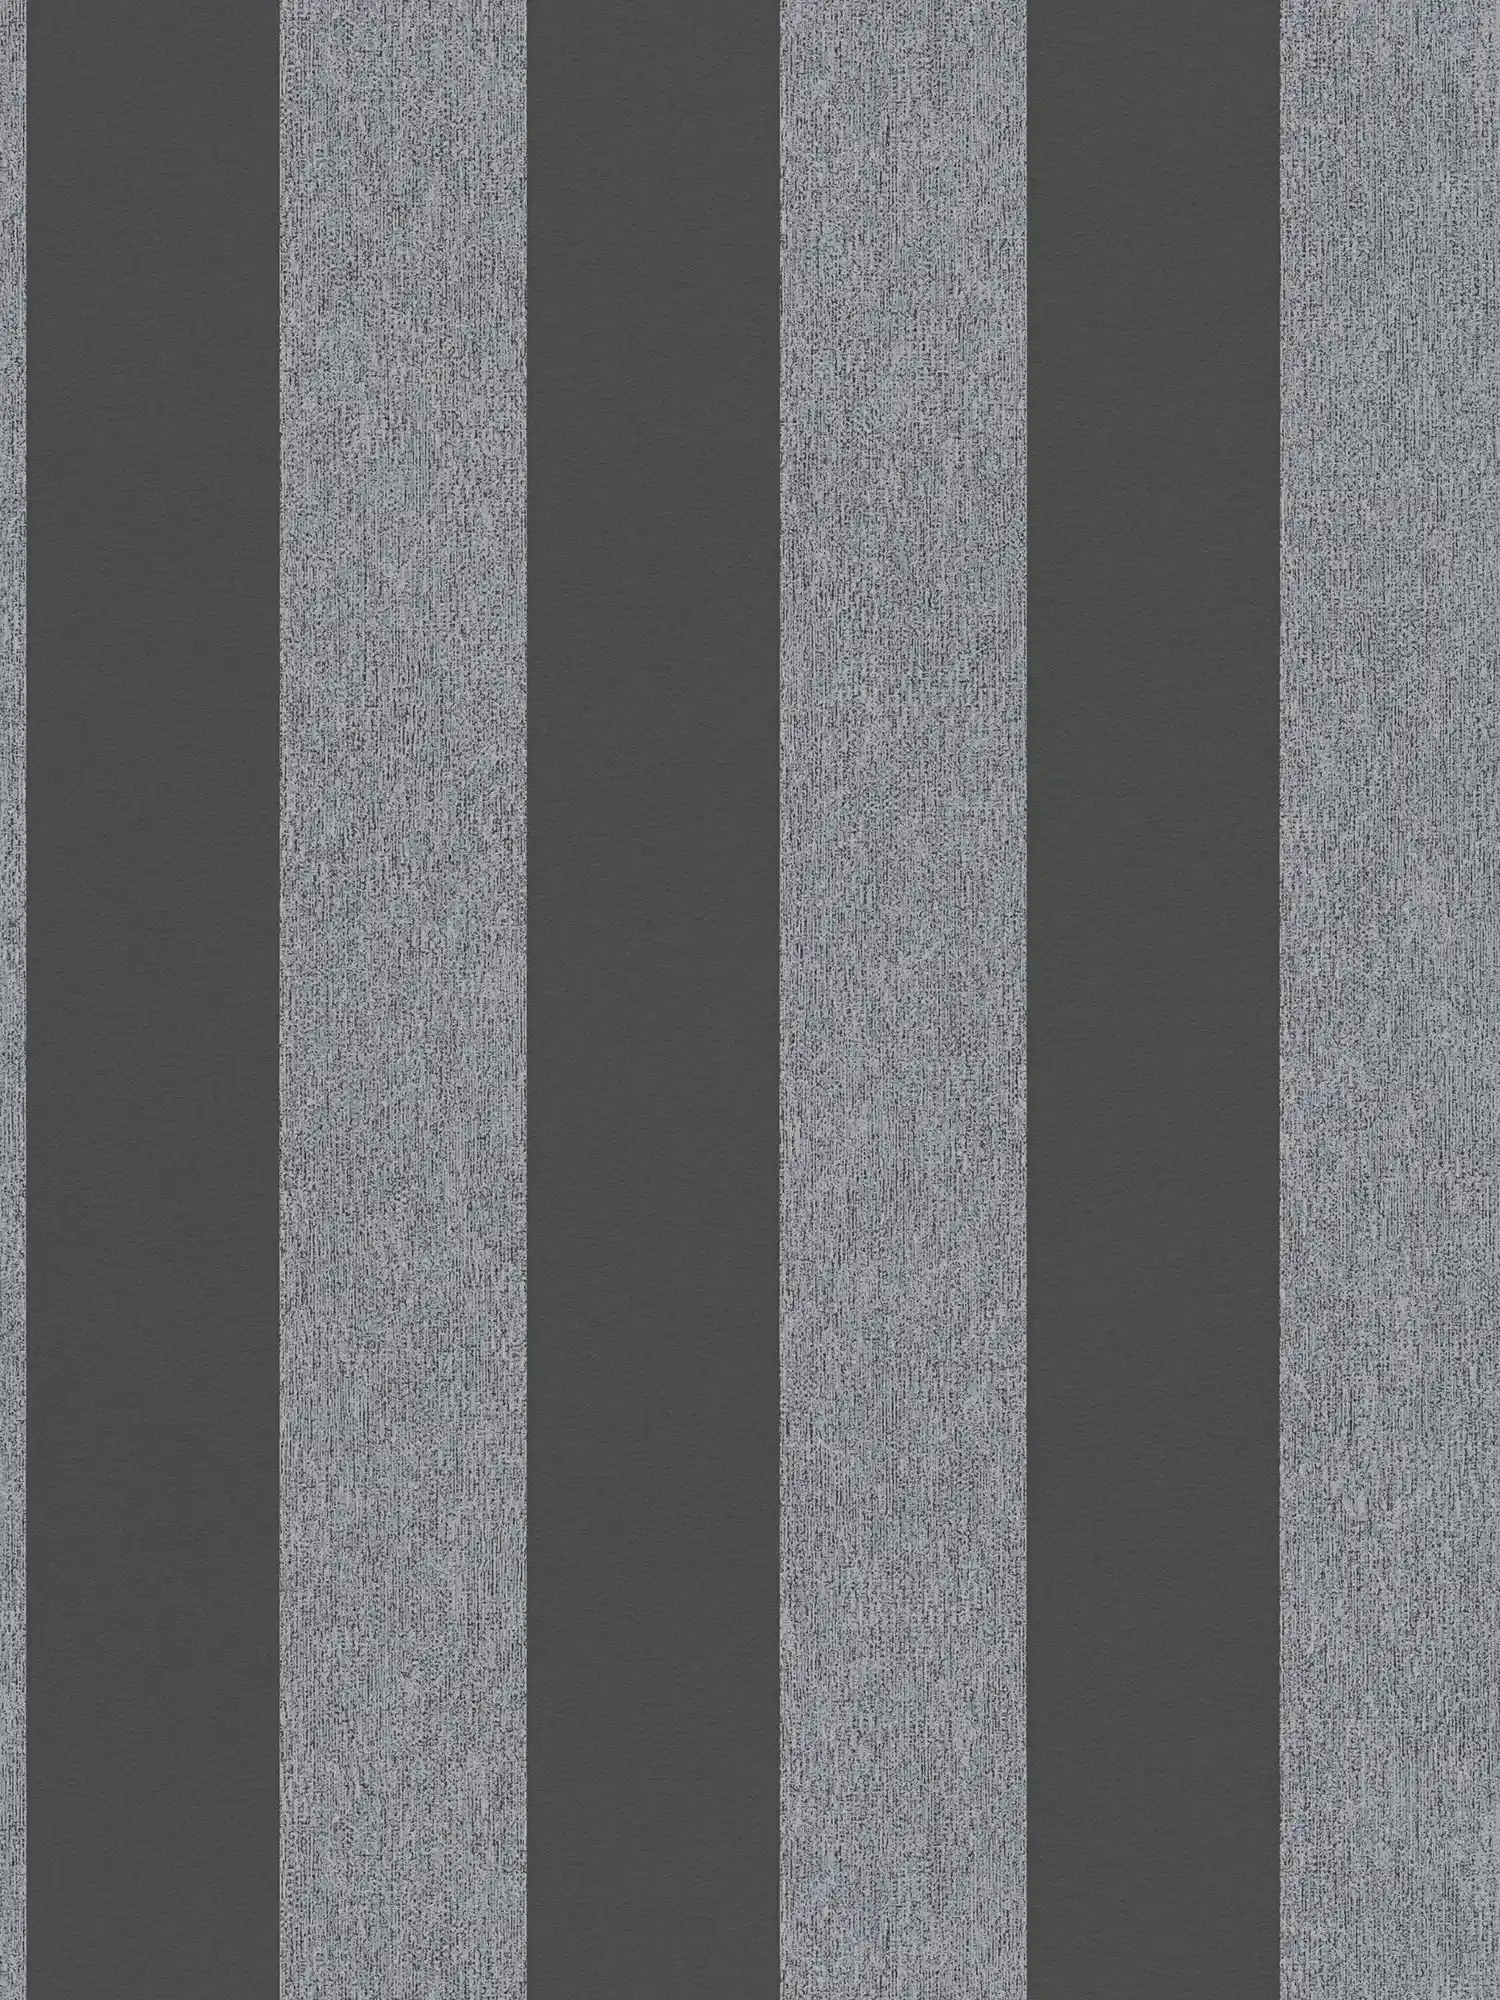         Papel pintado no tejido de rayas con textura mate - negro, gris
    